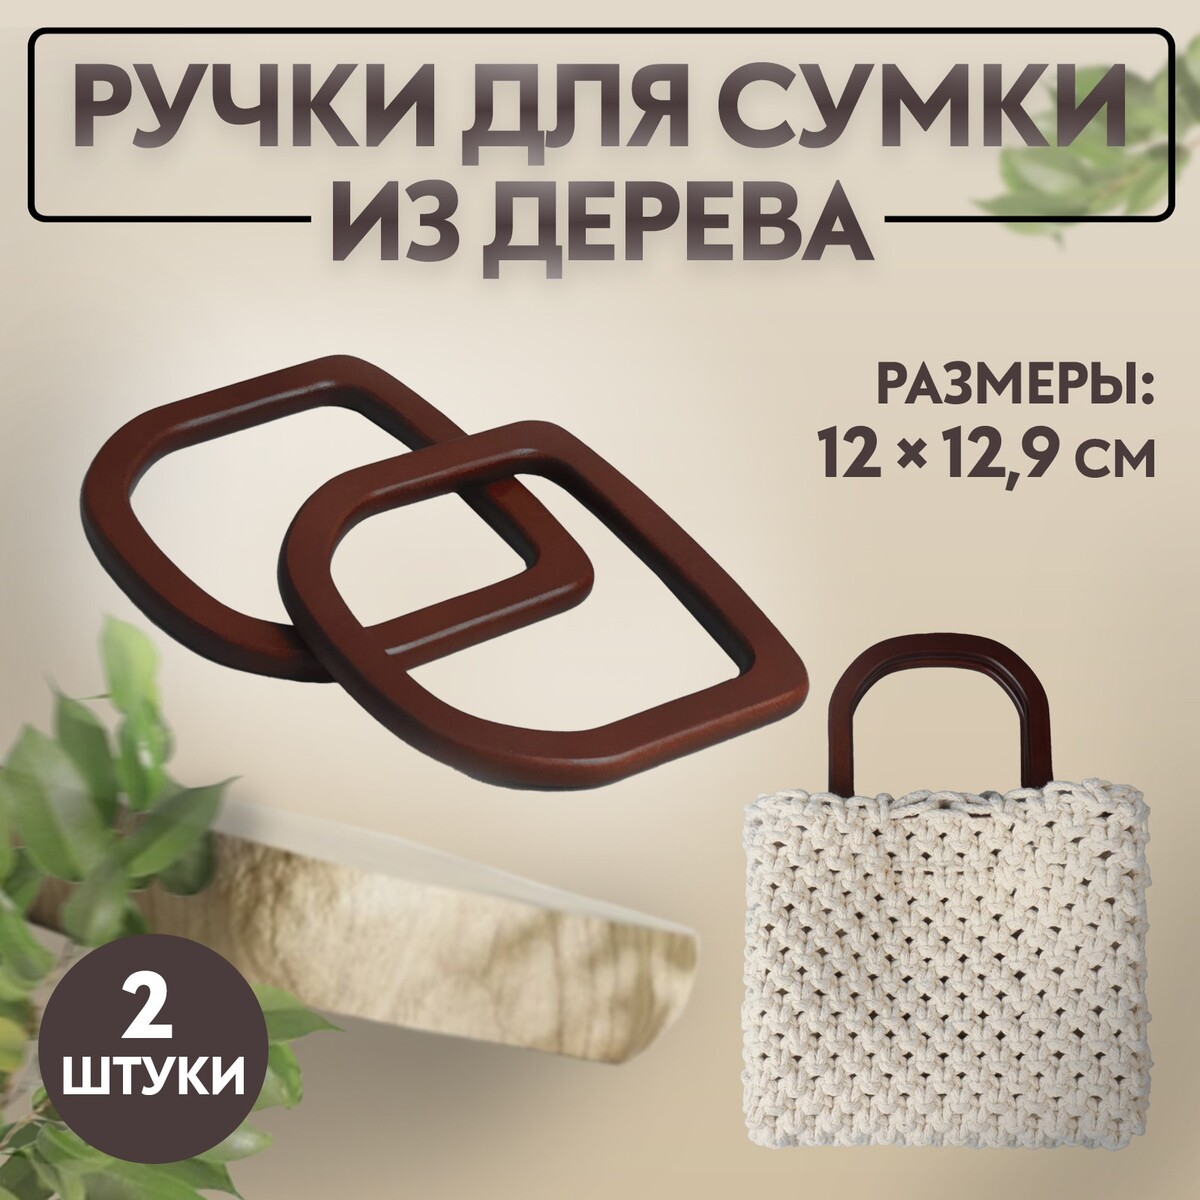 Ручки для сумки деревянные, 12 × 12,9 см, 2 шт, цвет коричневый ручки для сумки деревянные 15 × 8 см 2 шт светло коричневый